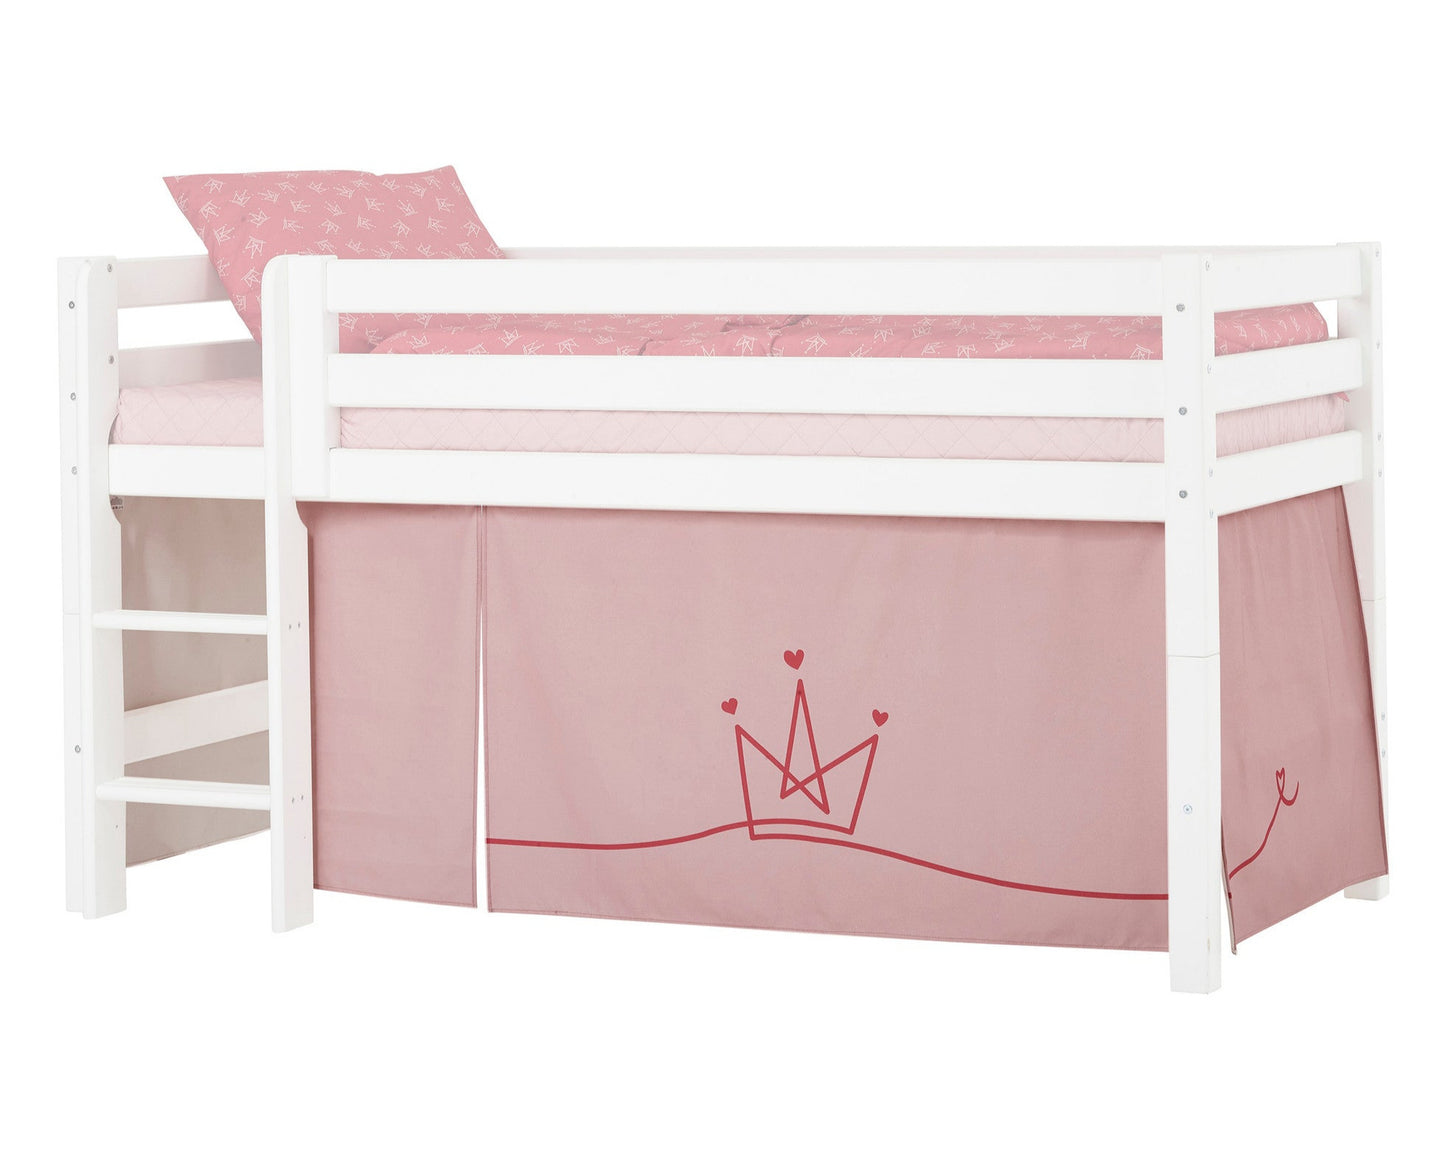 Принцесса - Занавес для полуторной и двухъярусной кровати - 90x200 см